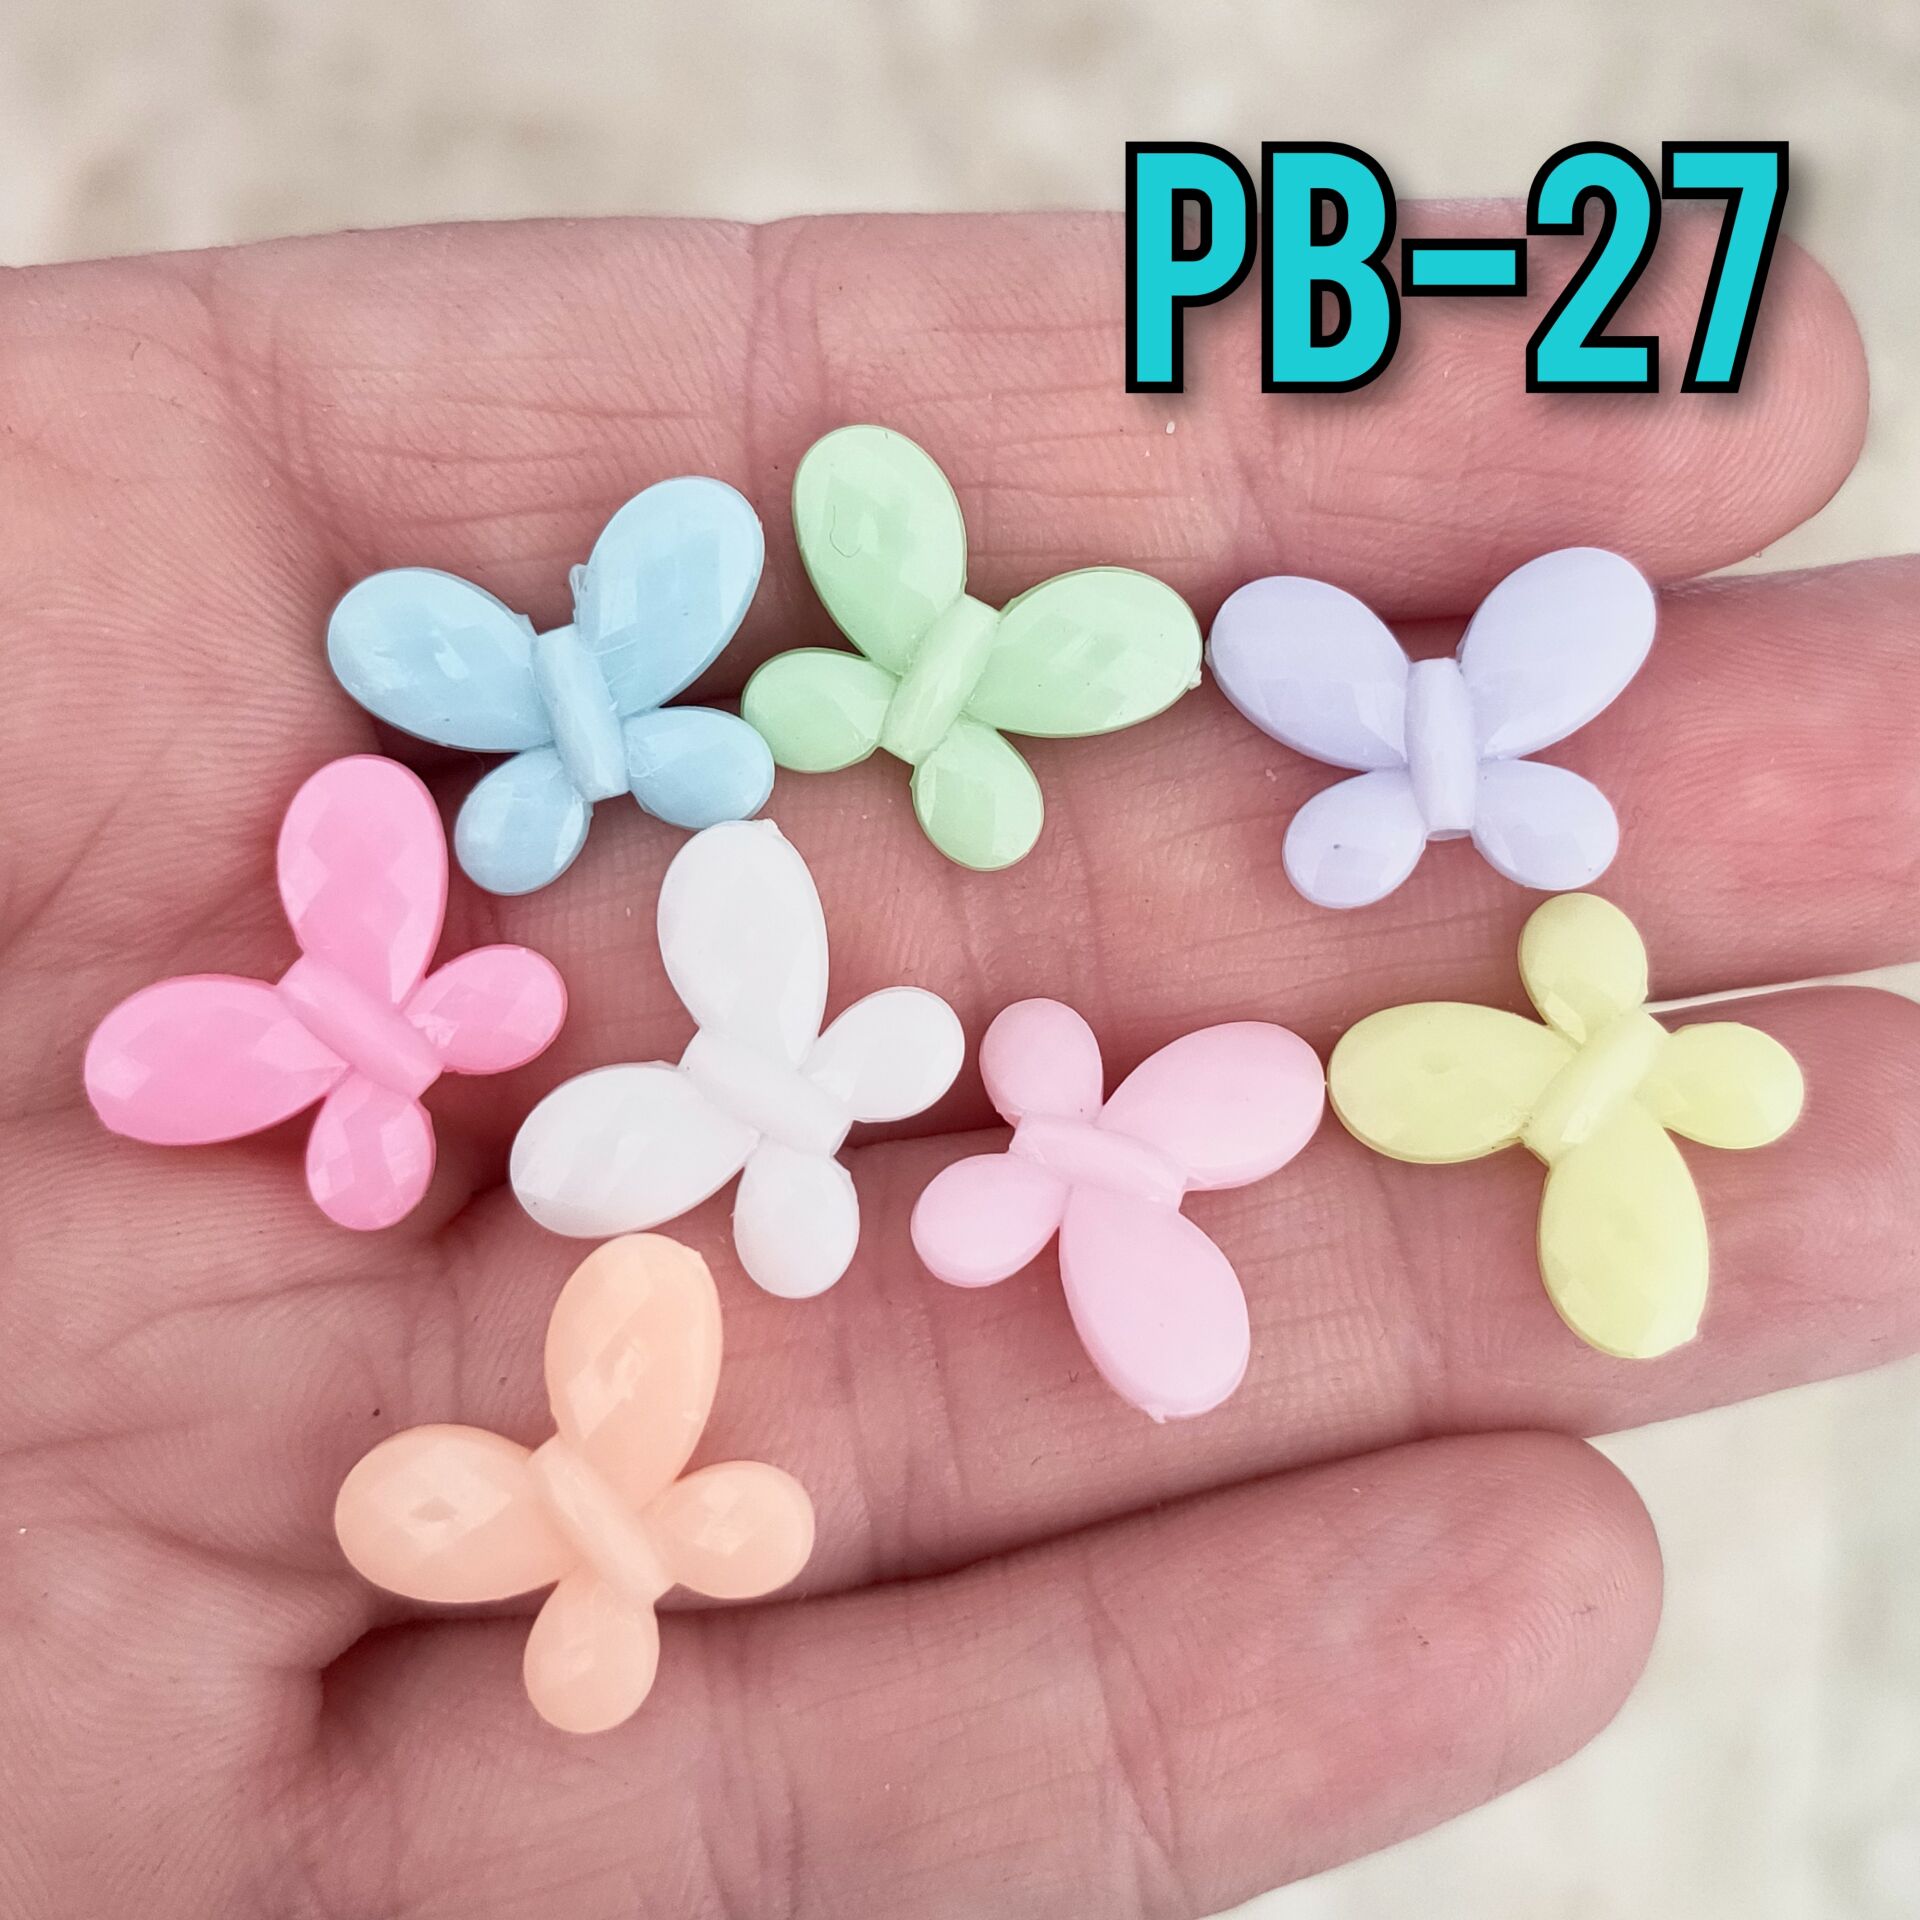 Pb-27 Soft Renk Kelebek Plastik Boncuk 13*17 mm